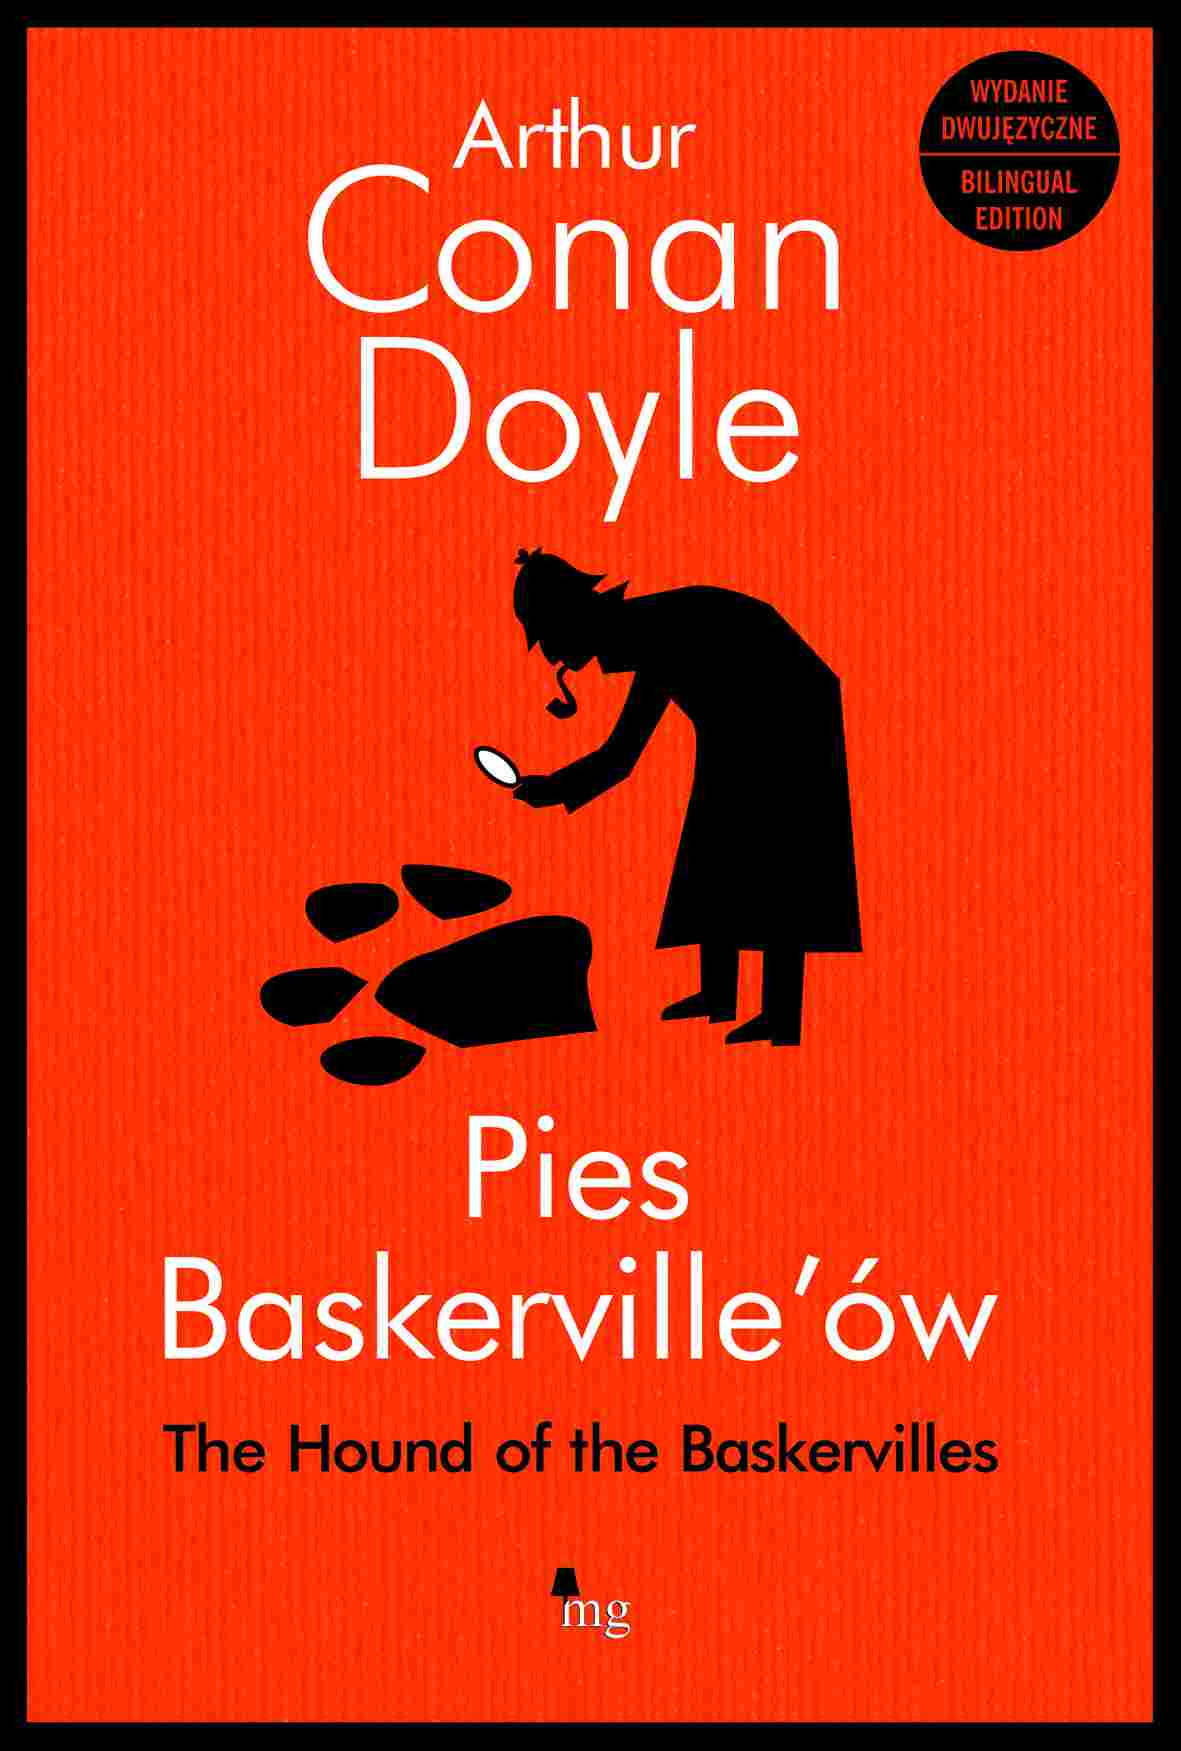 Okładka:Pies Baskerville'ów. Hound of the Baskerville - wydanie dwujęzyczne 